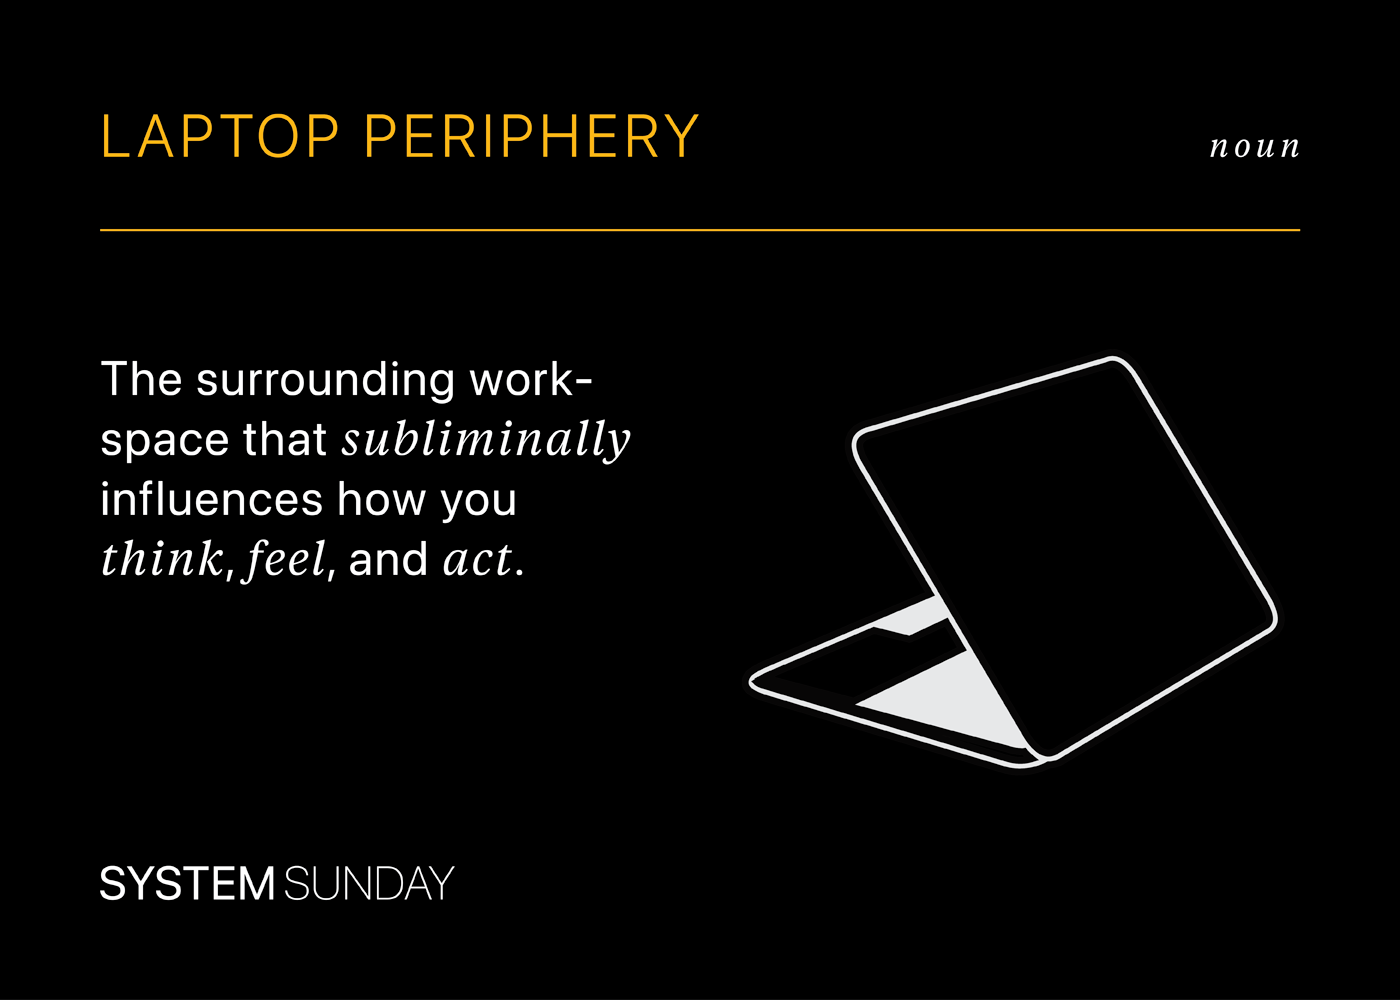 Defining laptop periphery